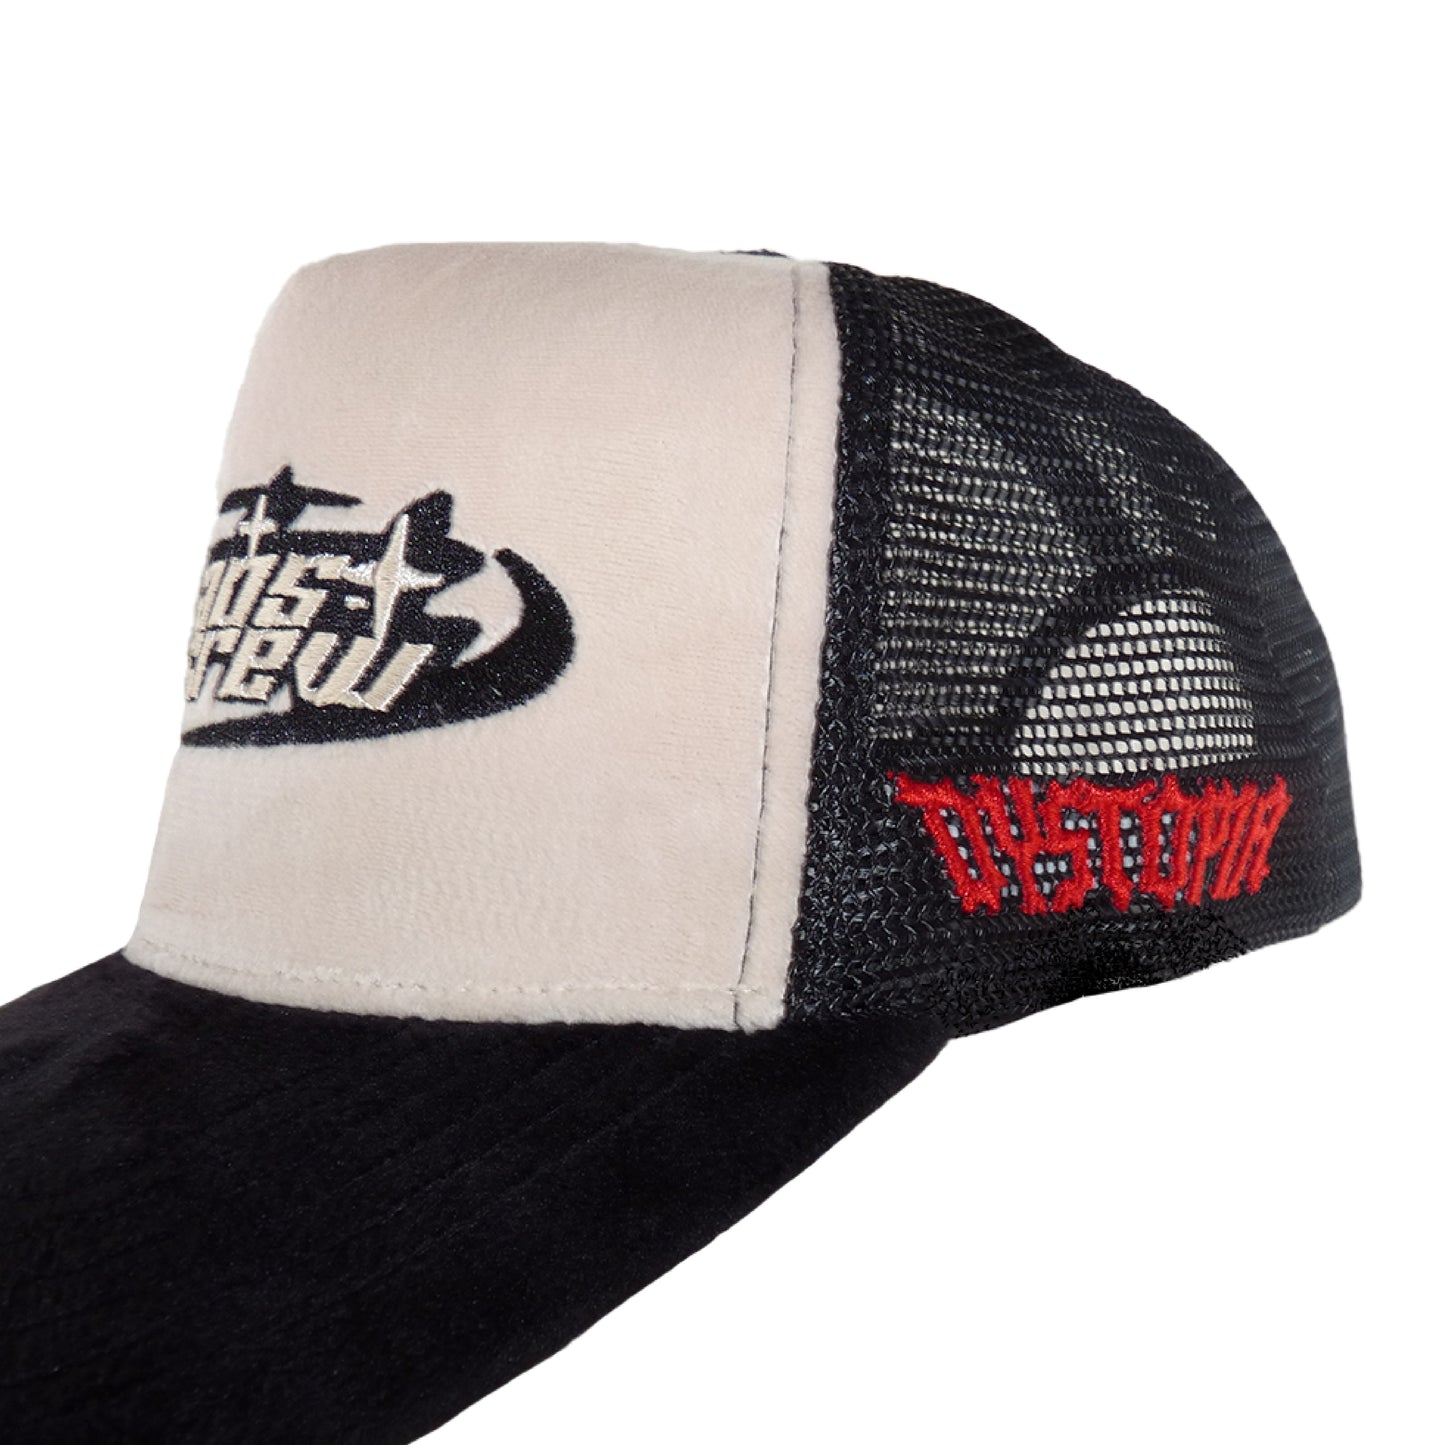 Dystopia Velvet Trucker Hat